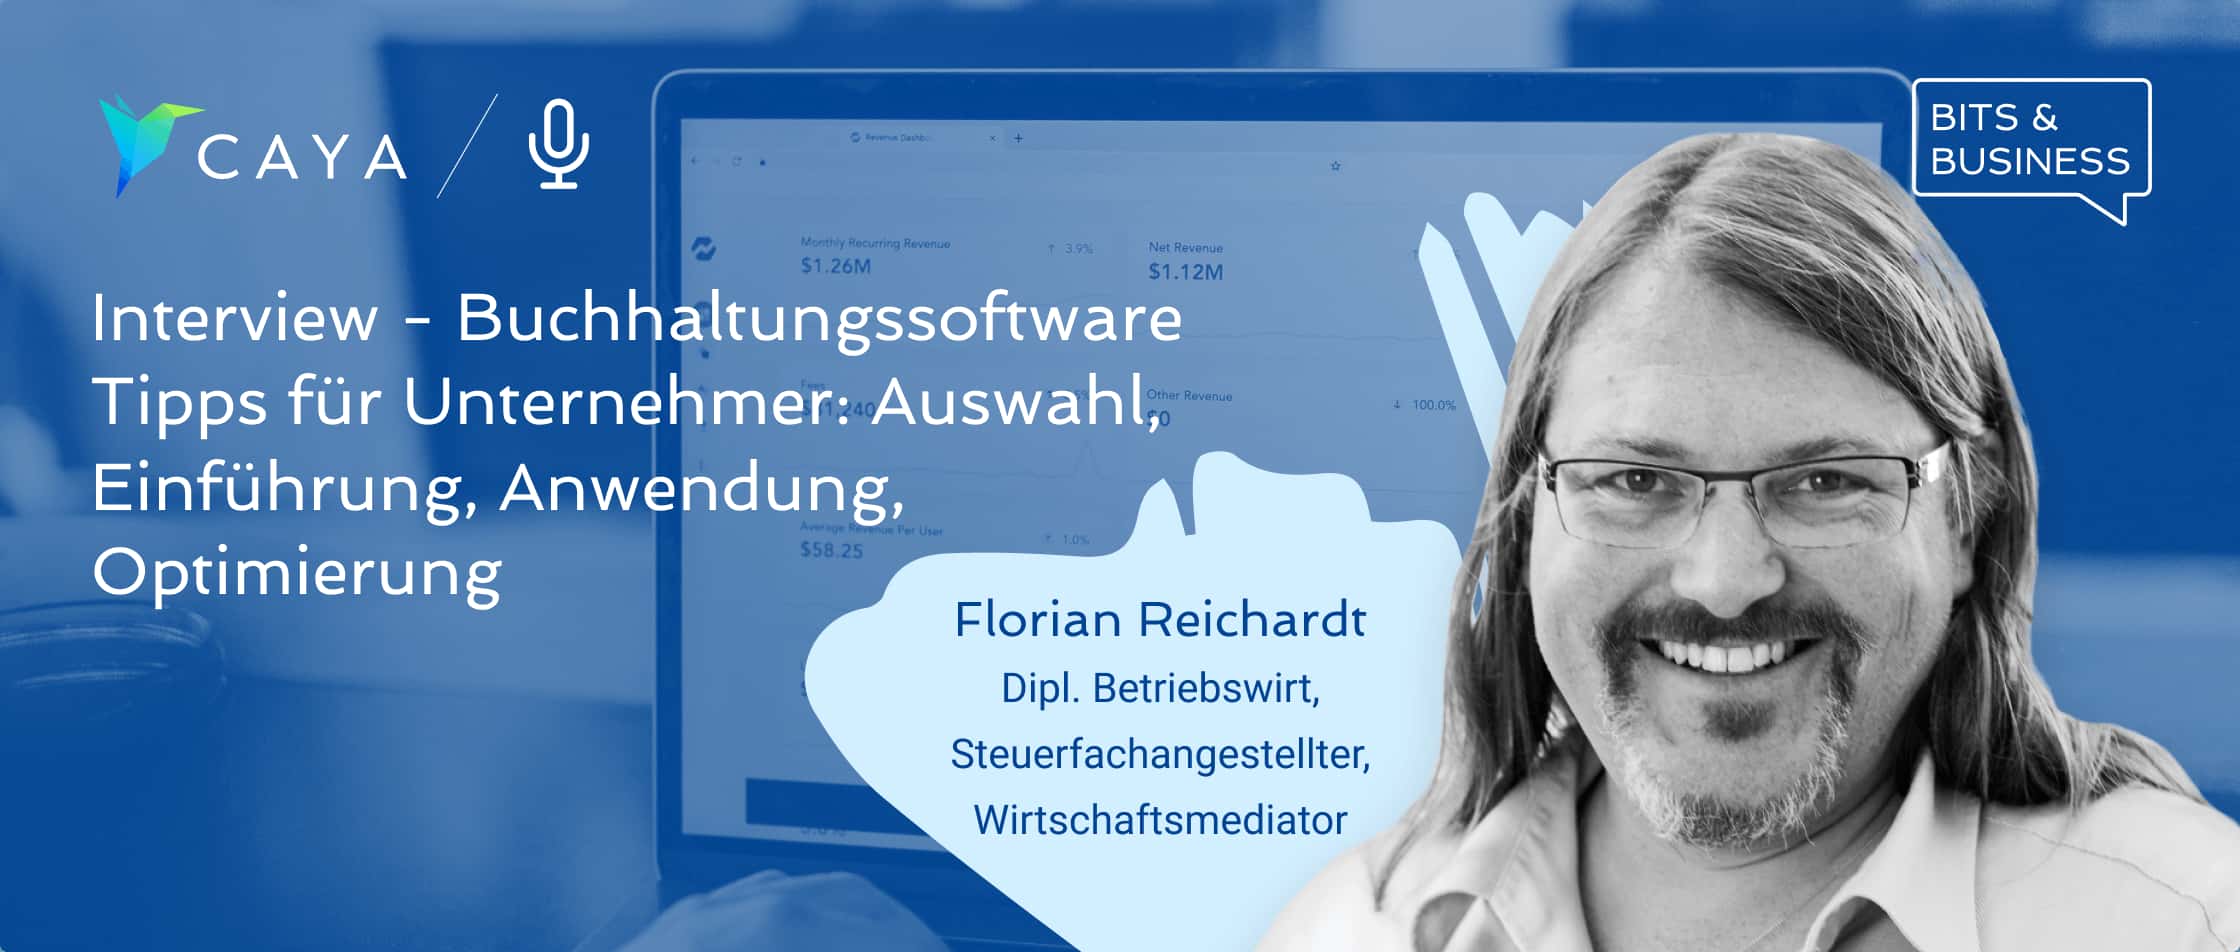 Buchhaltung als KMU optimieren & automatisieren - Florian Reichardt im Interview